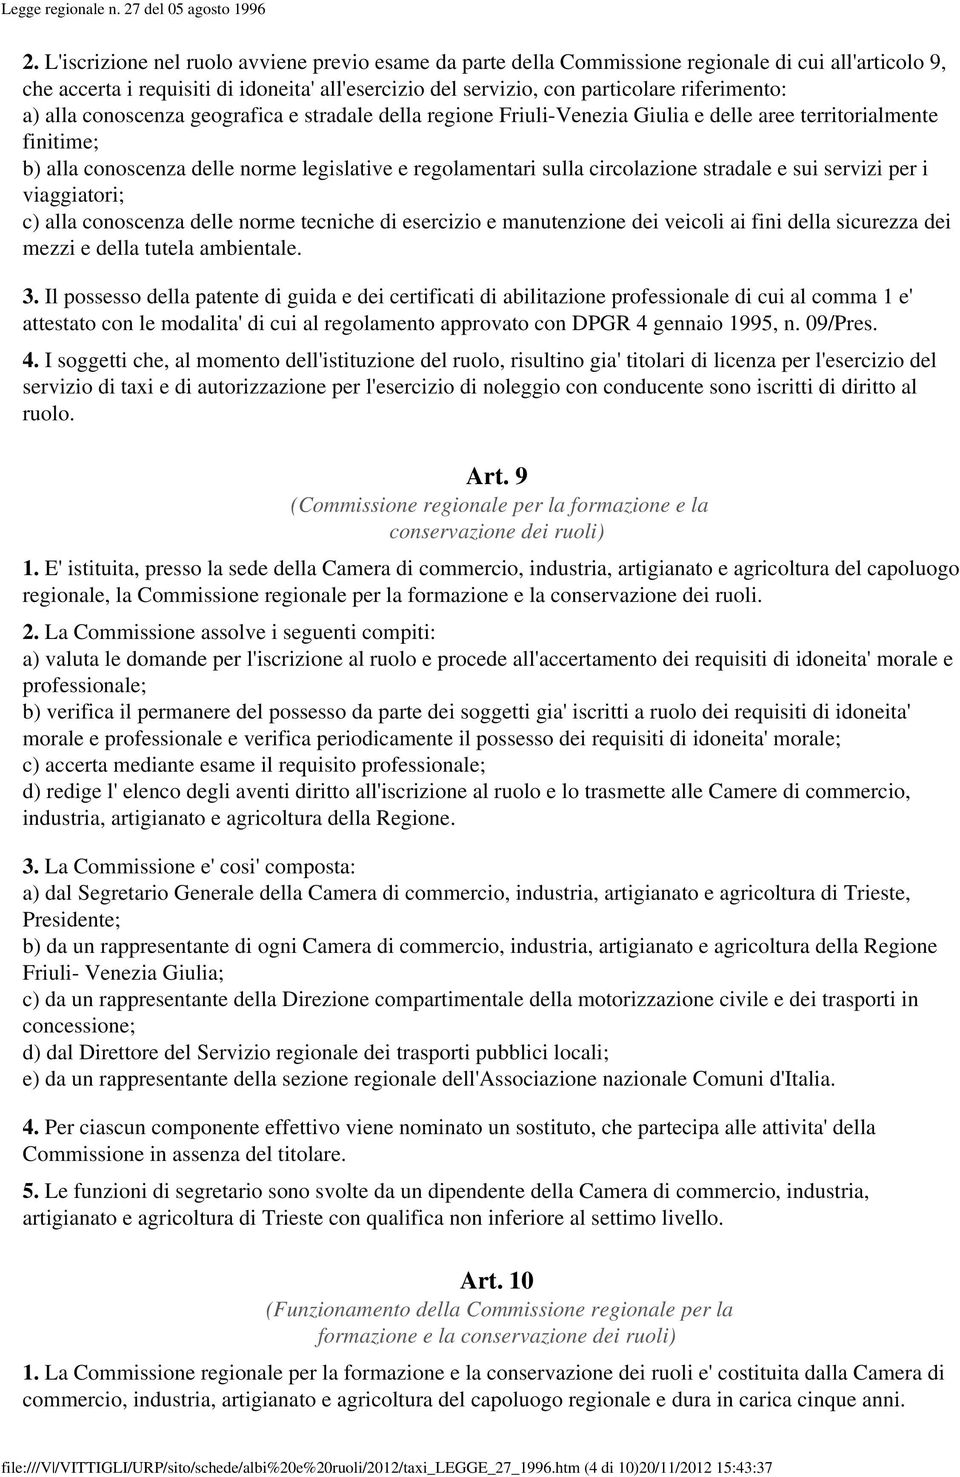 a) alla conoscenza geografica e stradale della regione Friuli-Venezia Giulia e delle aree territorialmente finitime; b) alla conoscenza delle norme legislative e regolamentari sulla circolazione